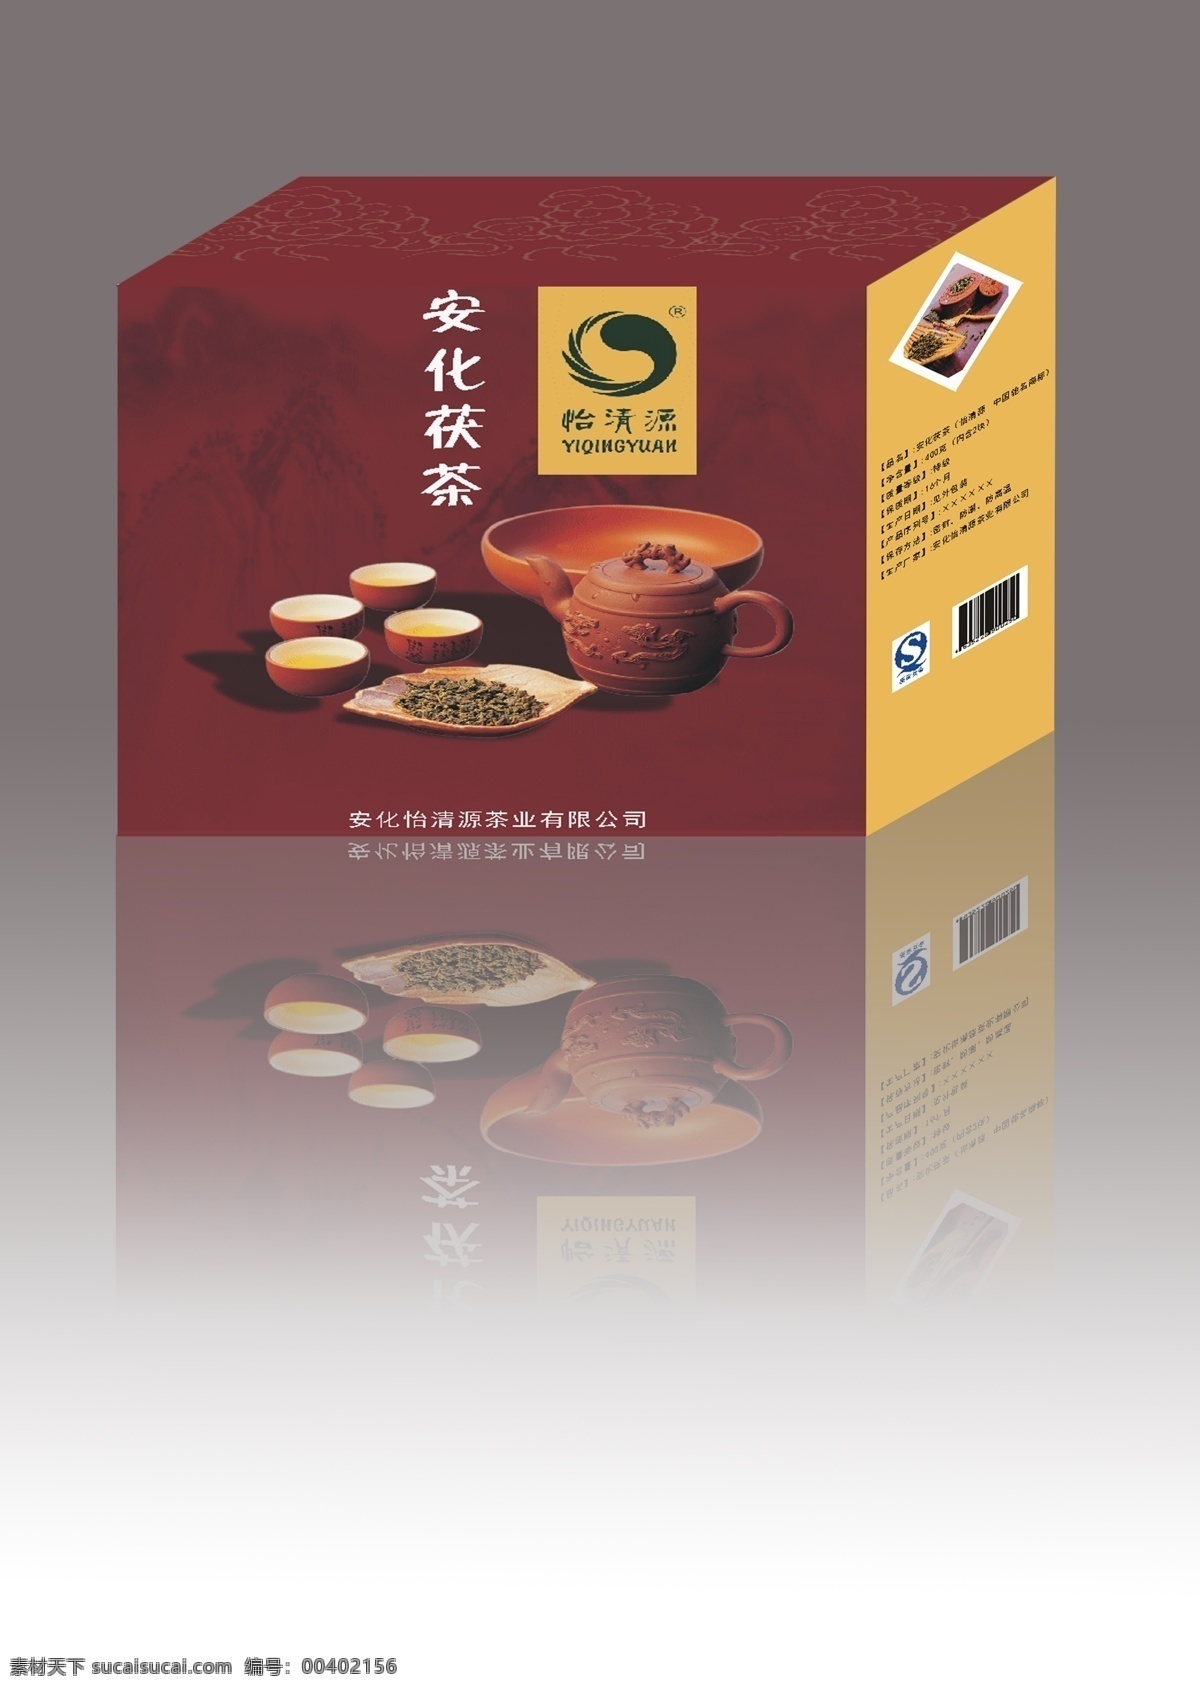 茯茶效果图 茯 茶 包装 效果图 茶包装 外盒效果图 茶文化 茯茶 白色